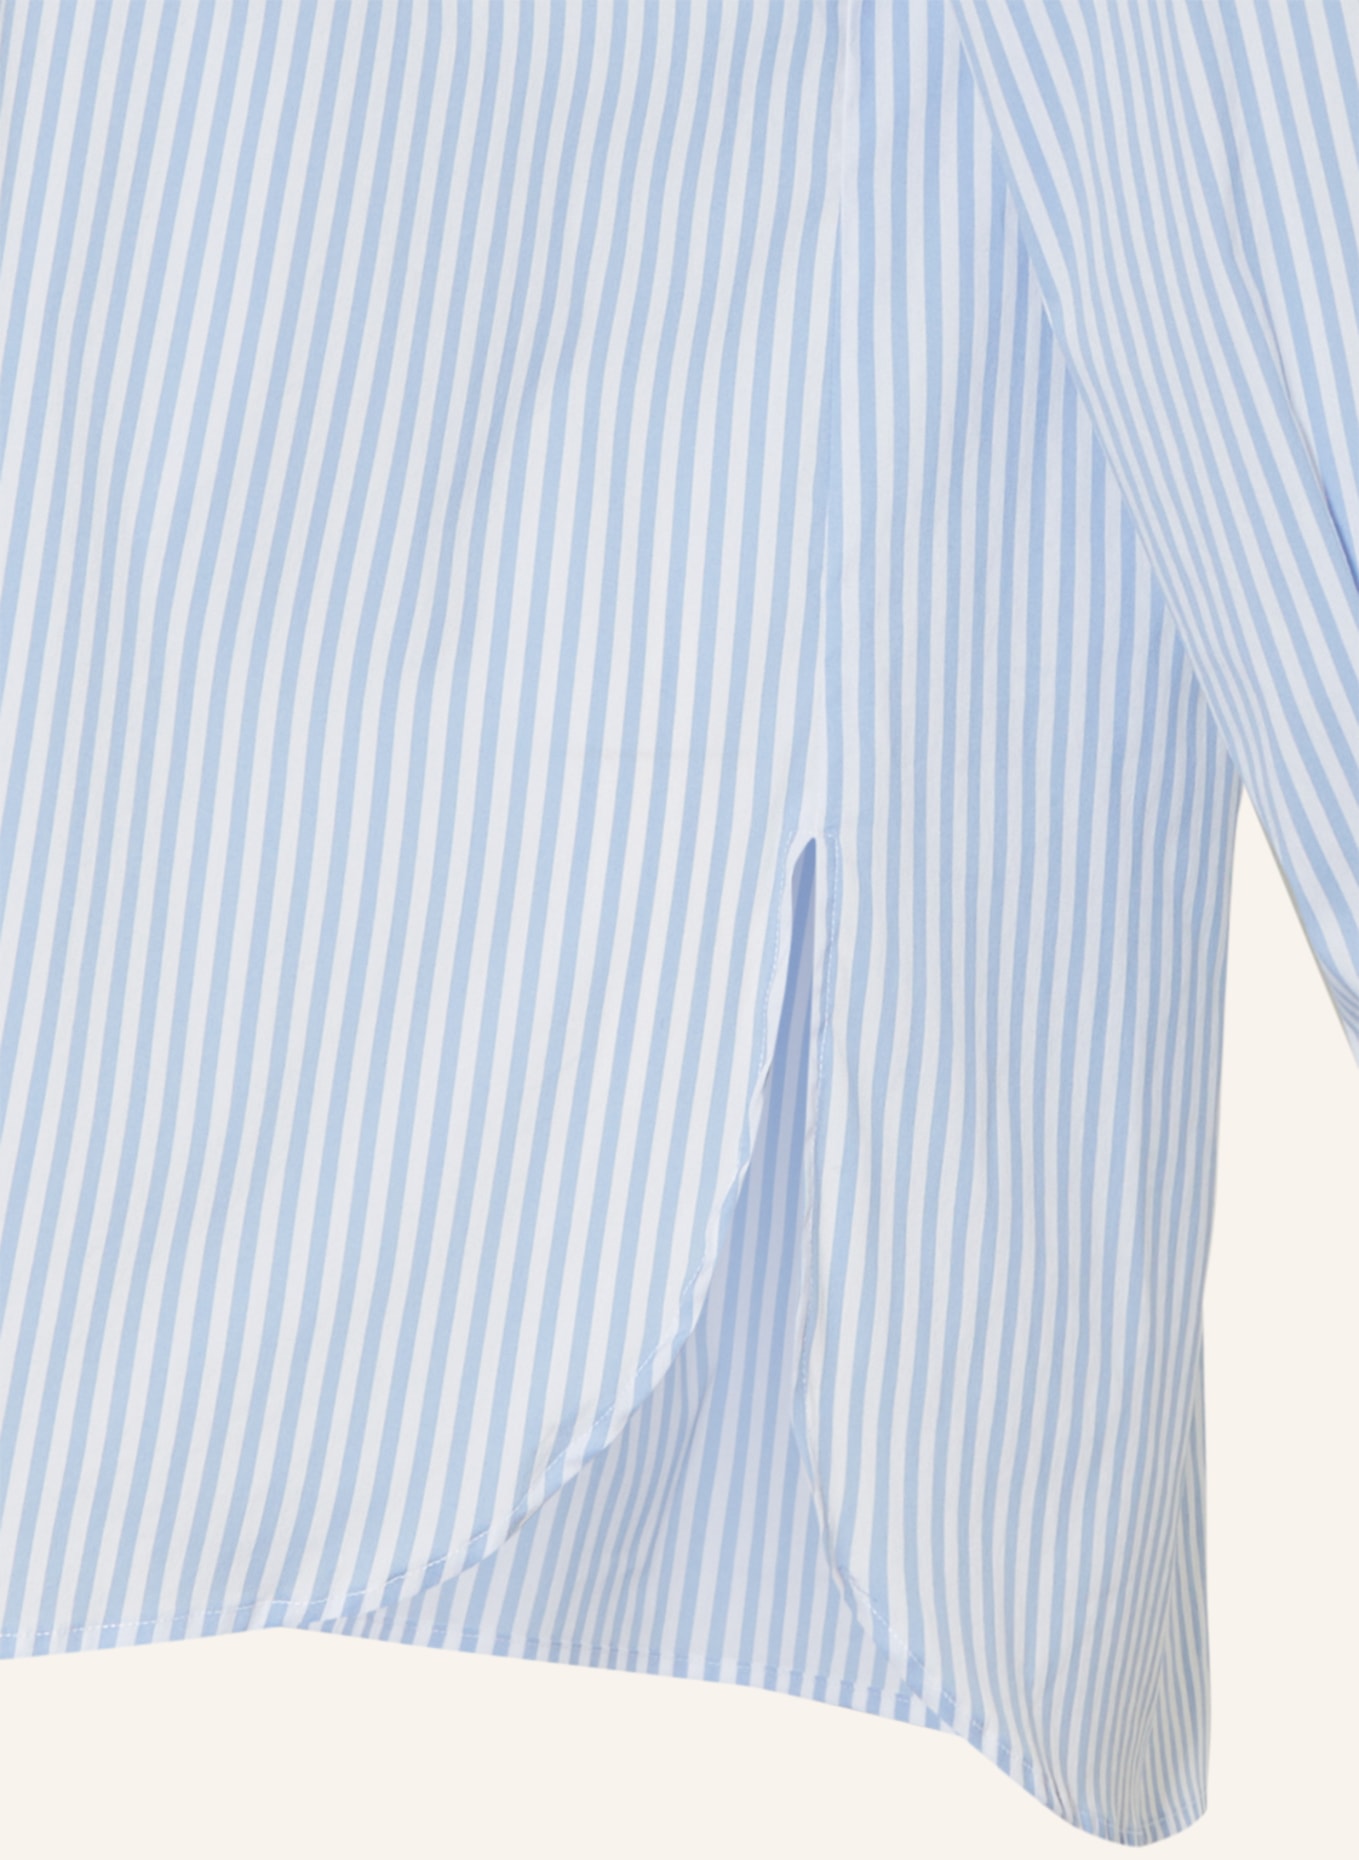 MARINA RINALDI SPORT Shirt blouse CITRATO, Color: WHITE/ LIGHT BLUE (Image 3)